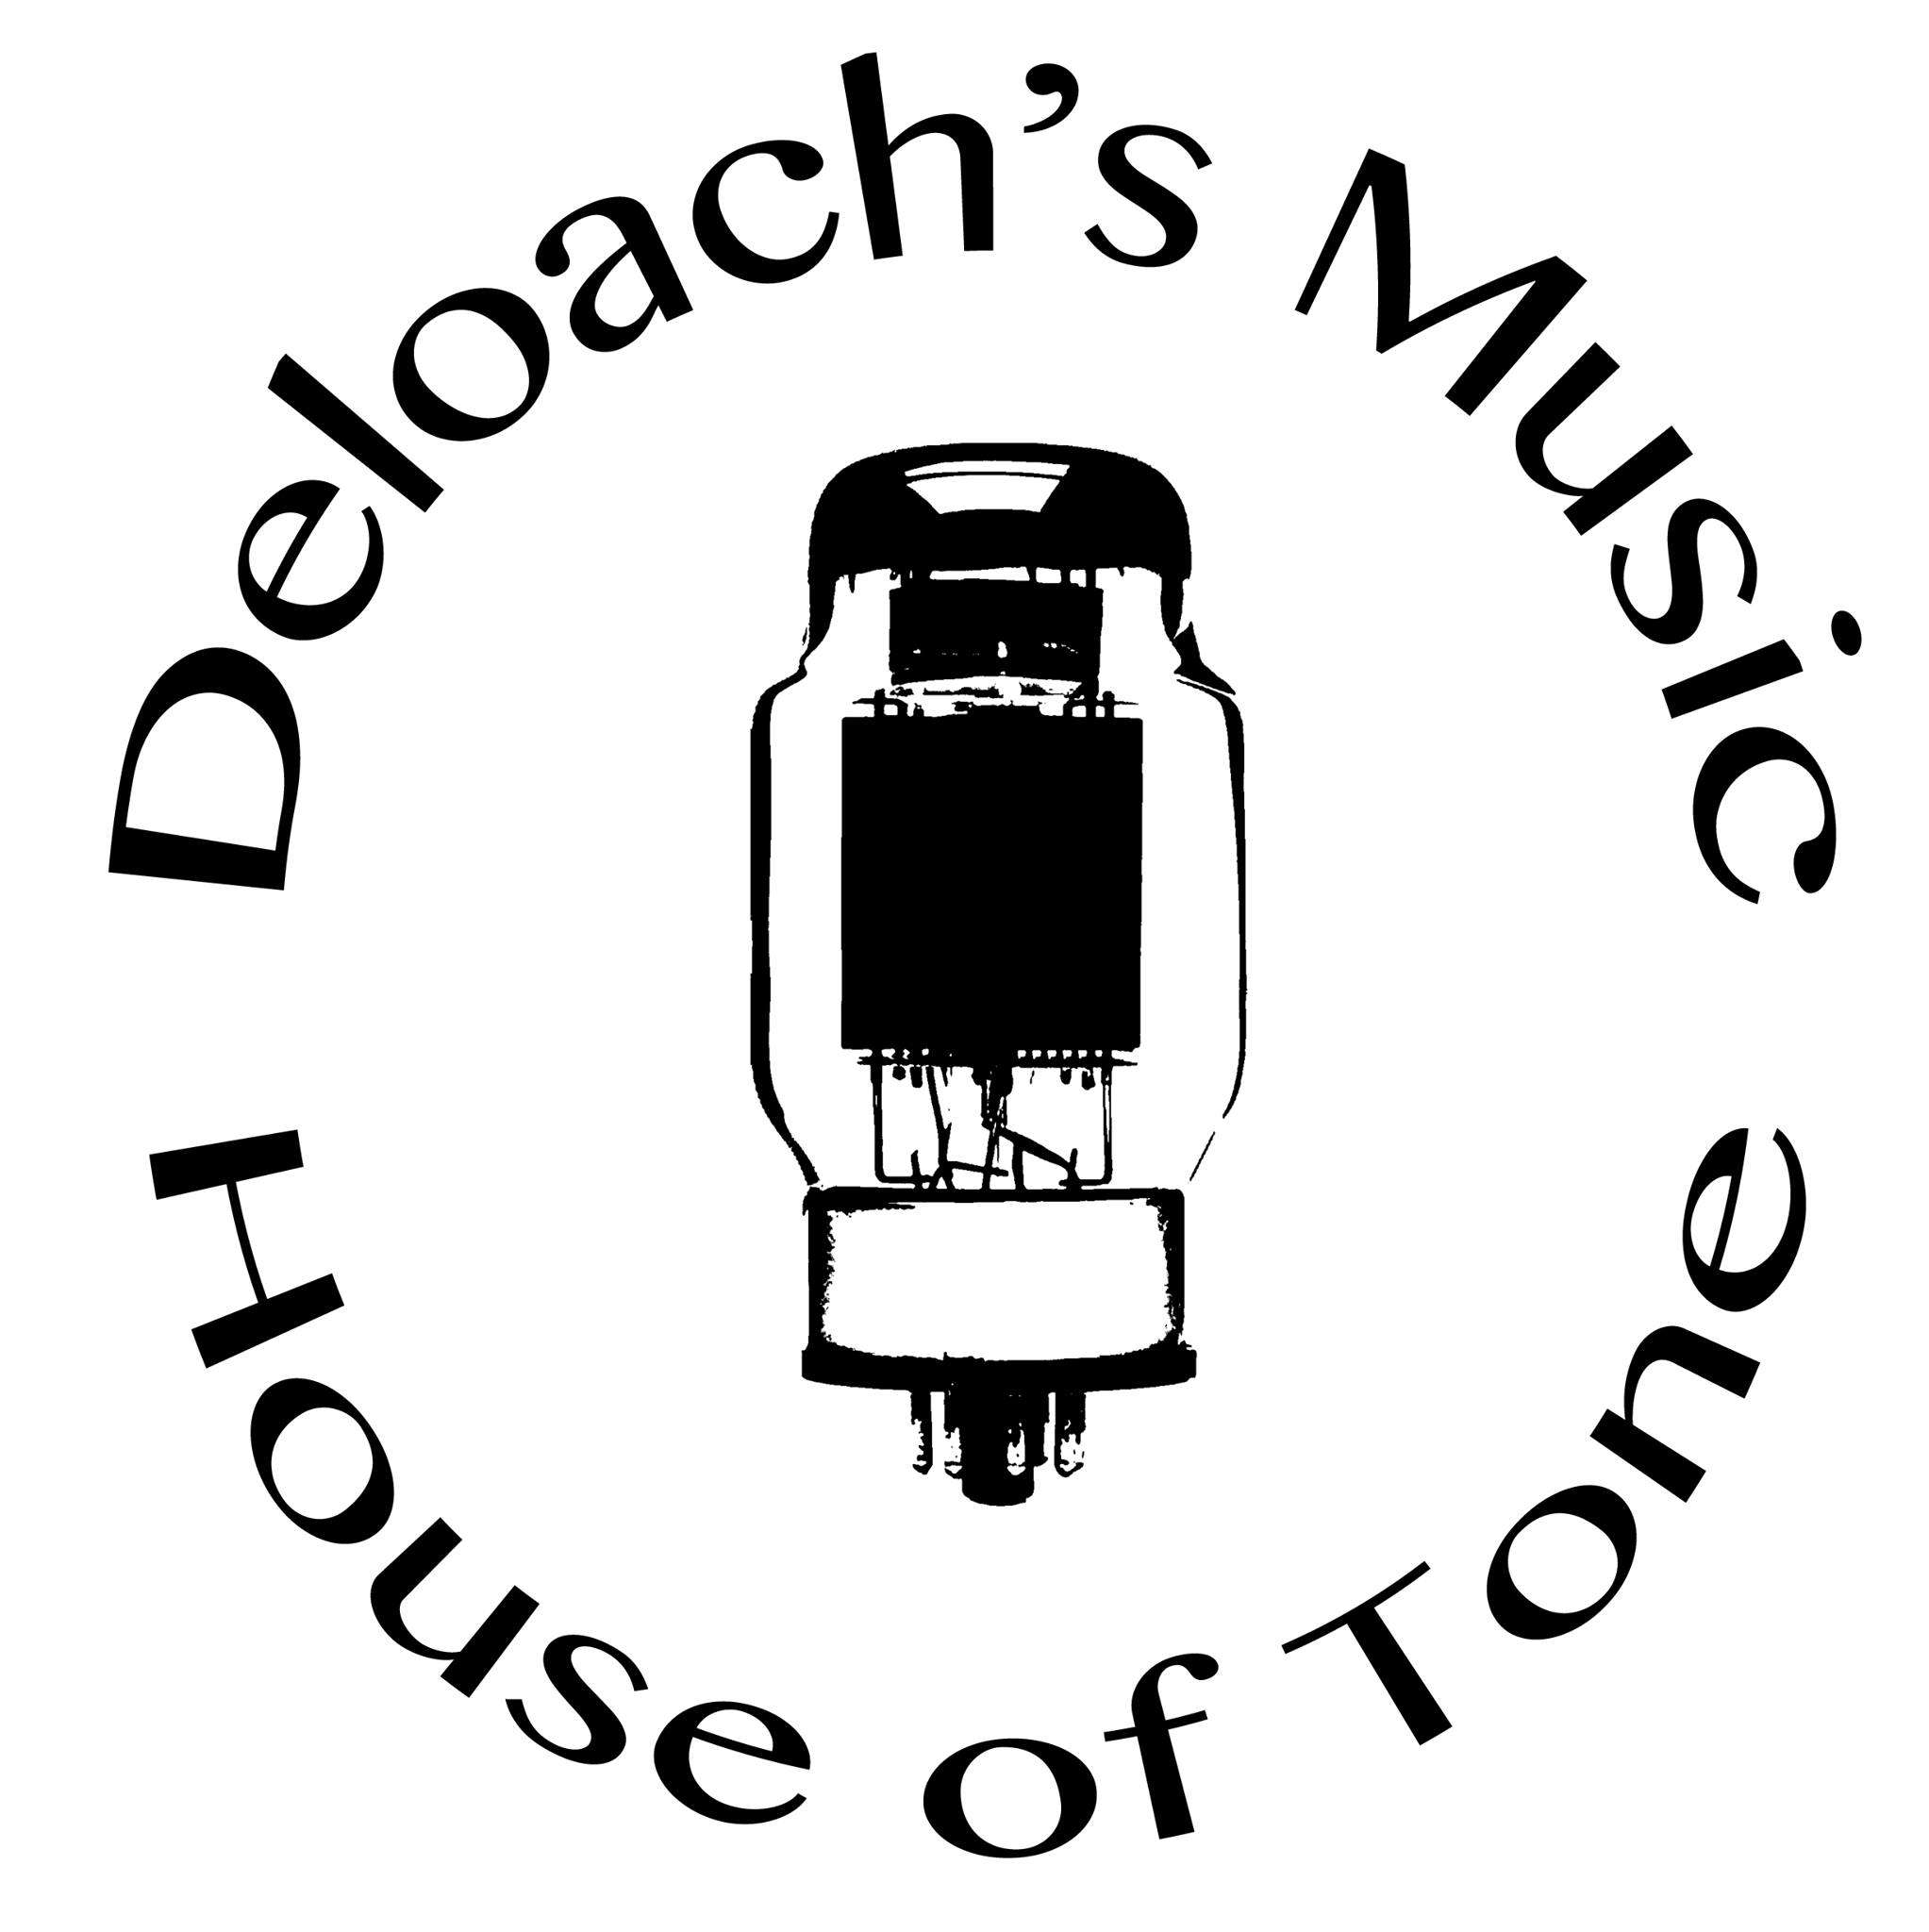 De Loach's Music & Sound